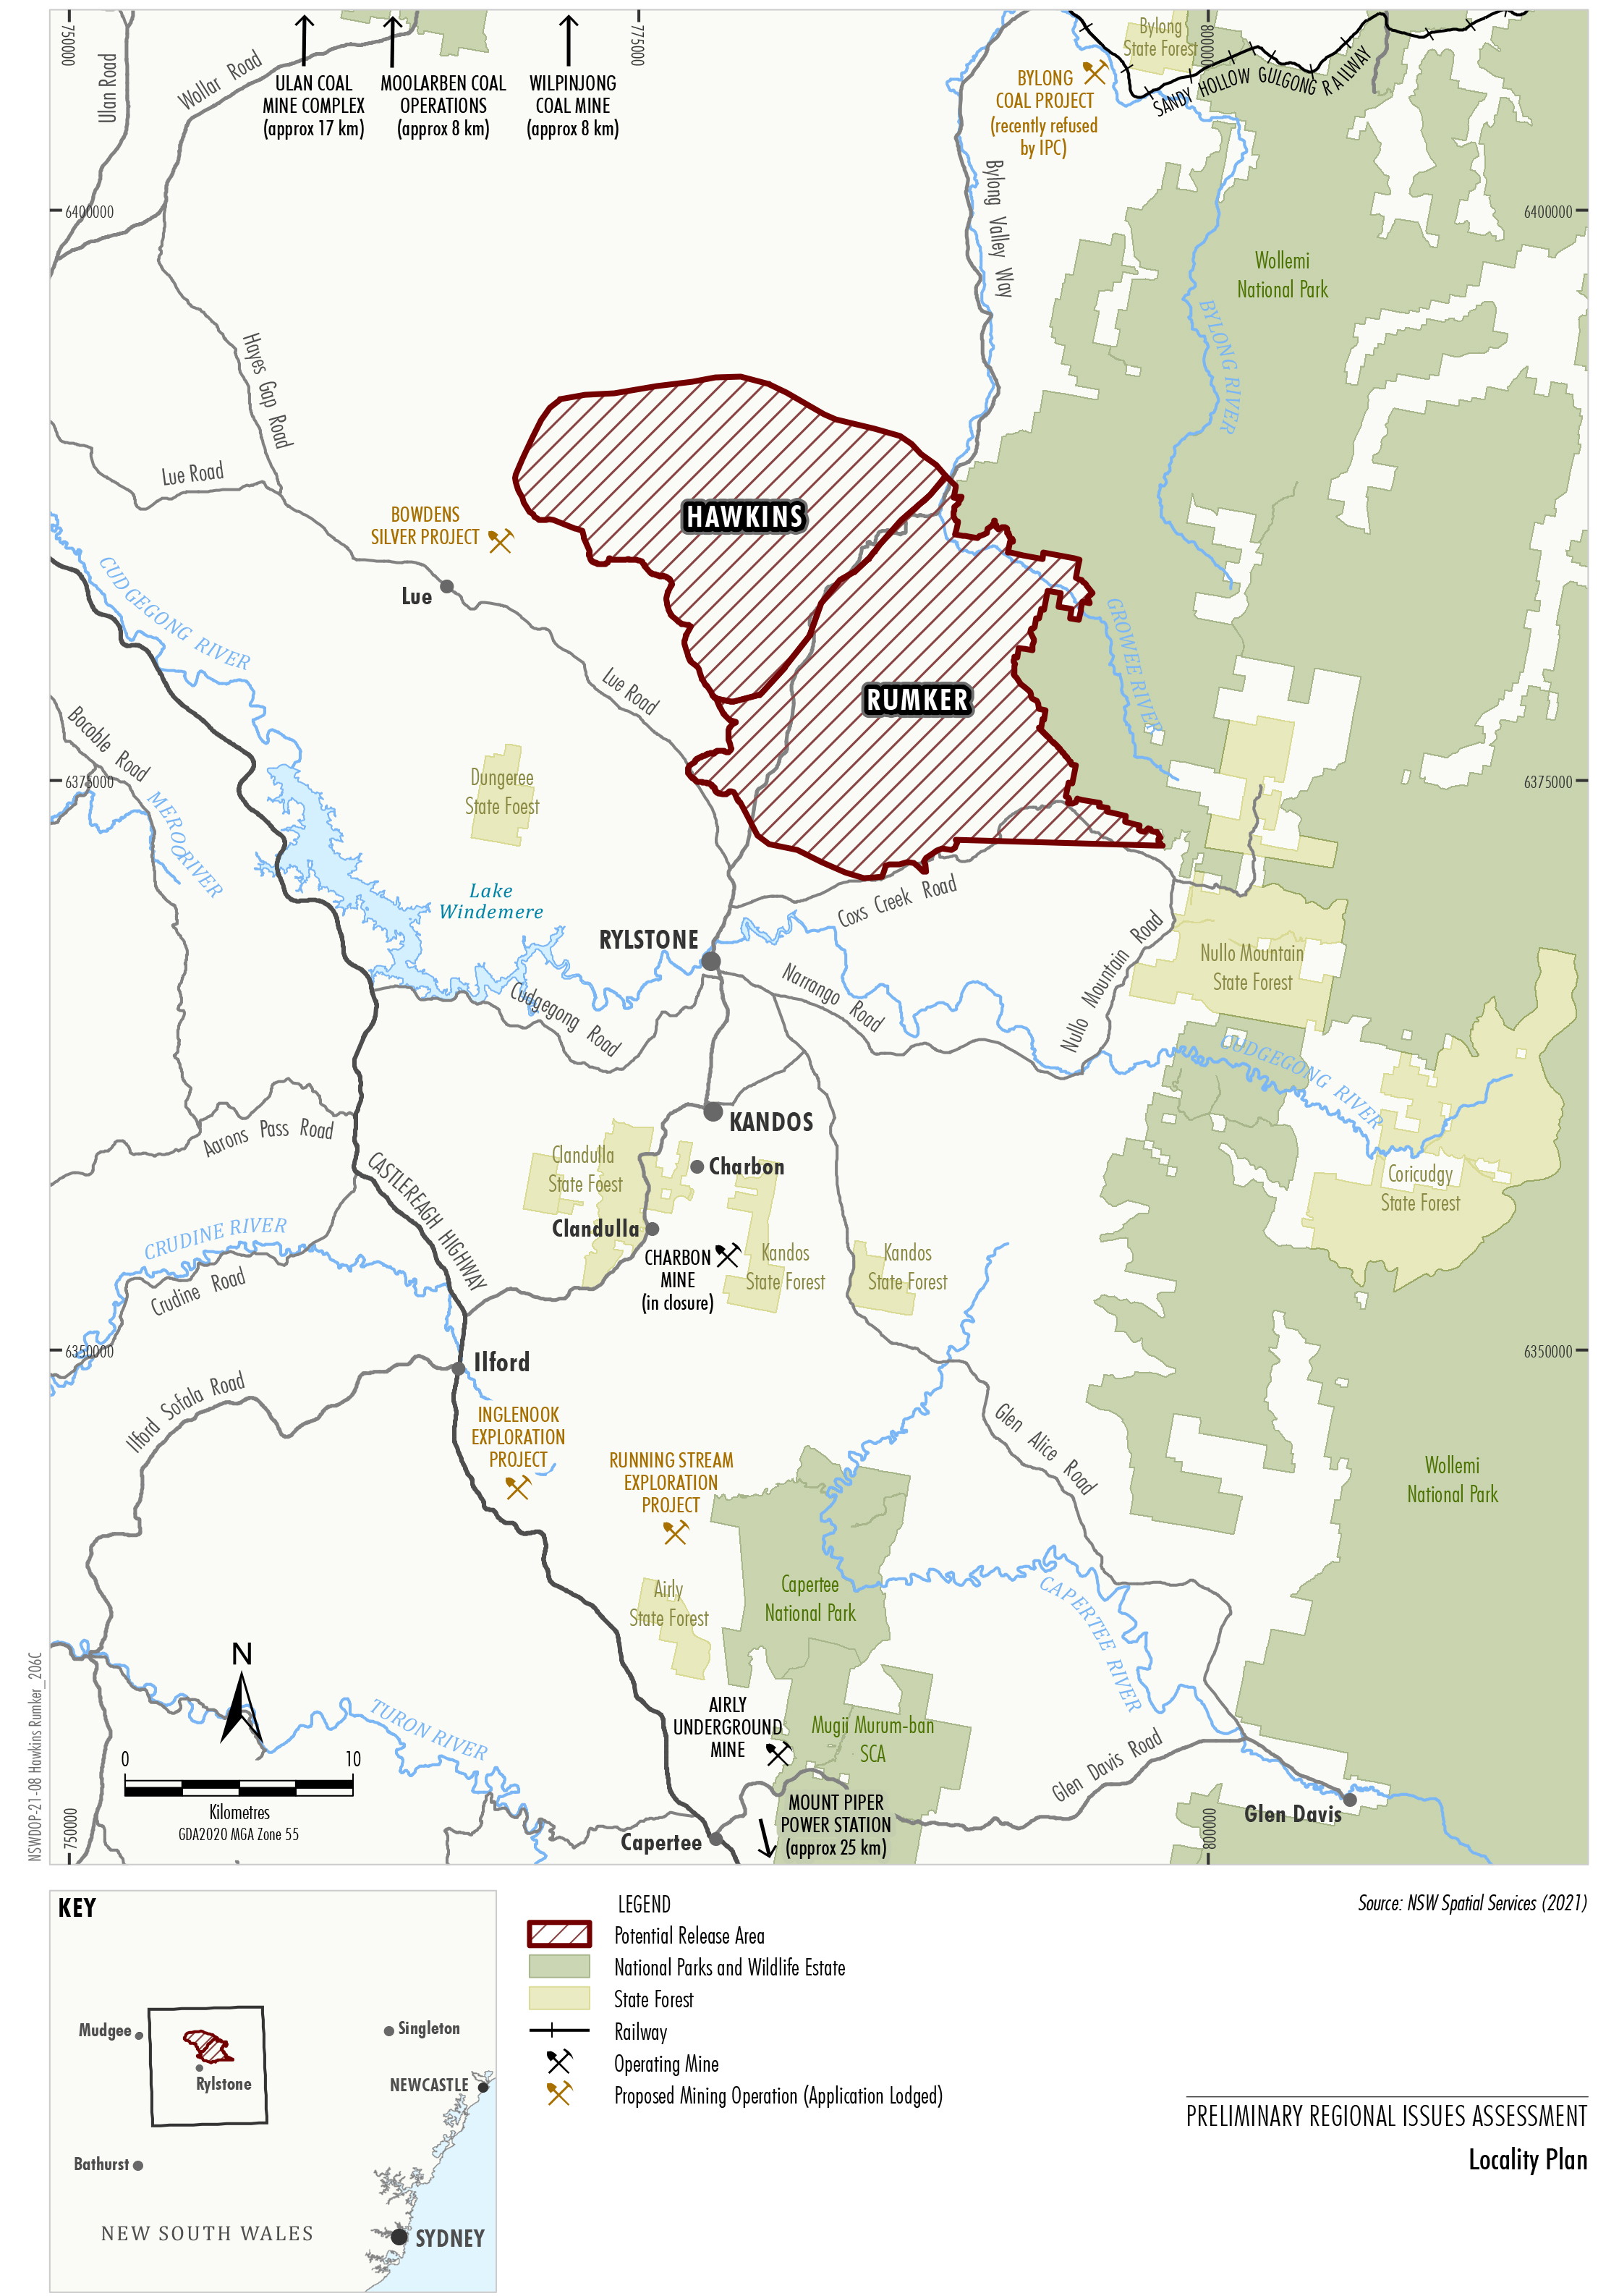 Map of Hawkins-Rumker Locality Plan